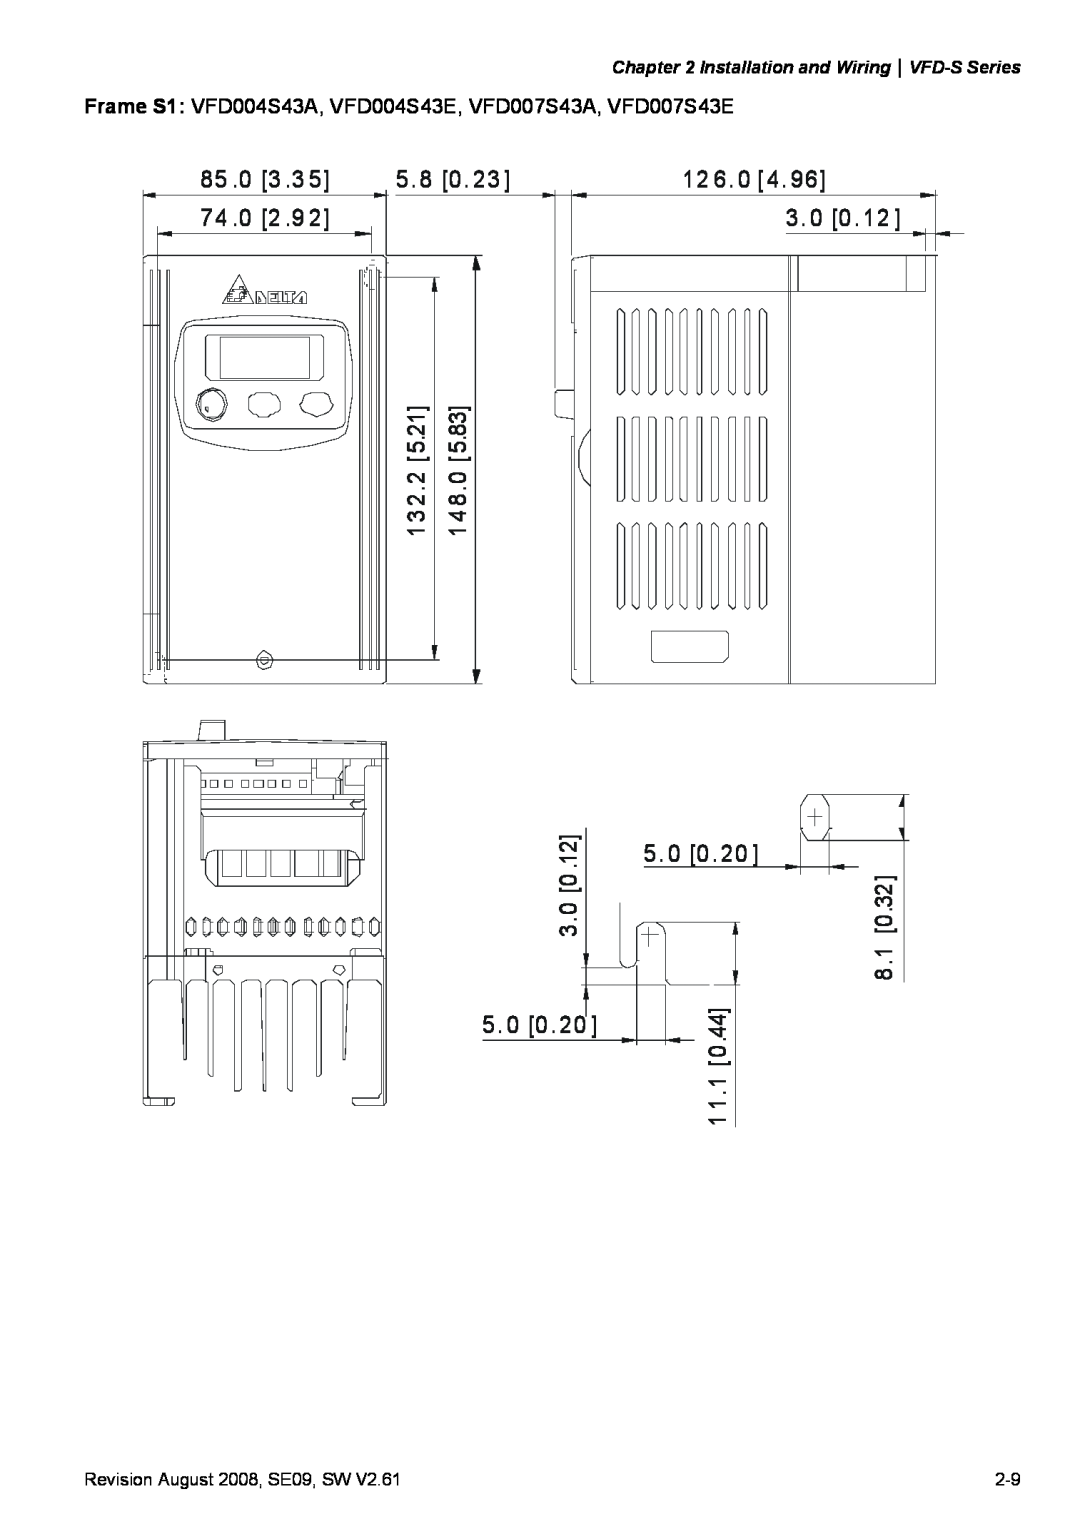 Delta Electronics VFD-S manual 3 .3, 5. 8 0, 2 .9, 12 6. 0 4 3. 0 0 5. 0 0, 13 2.2 5.21 14 8.0 3.0 0, 8.1 1 1.1 